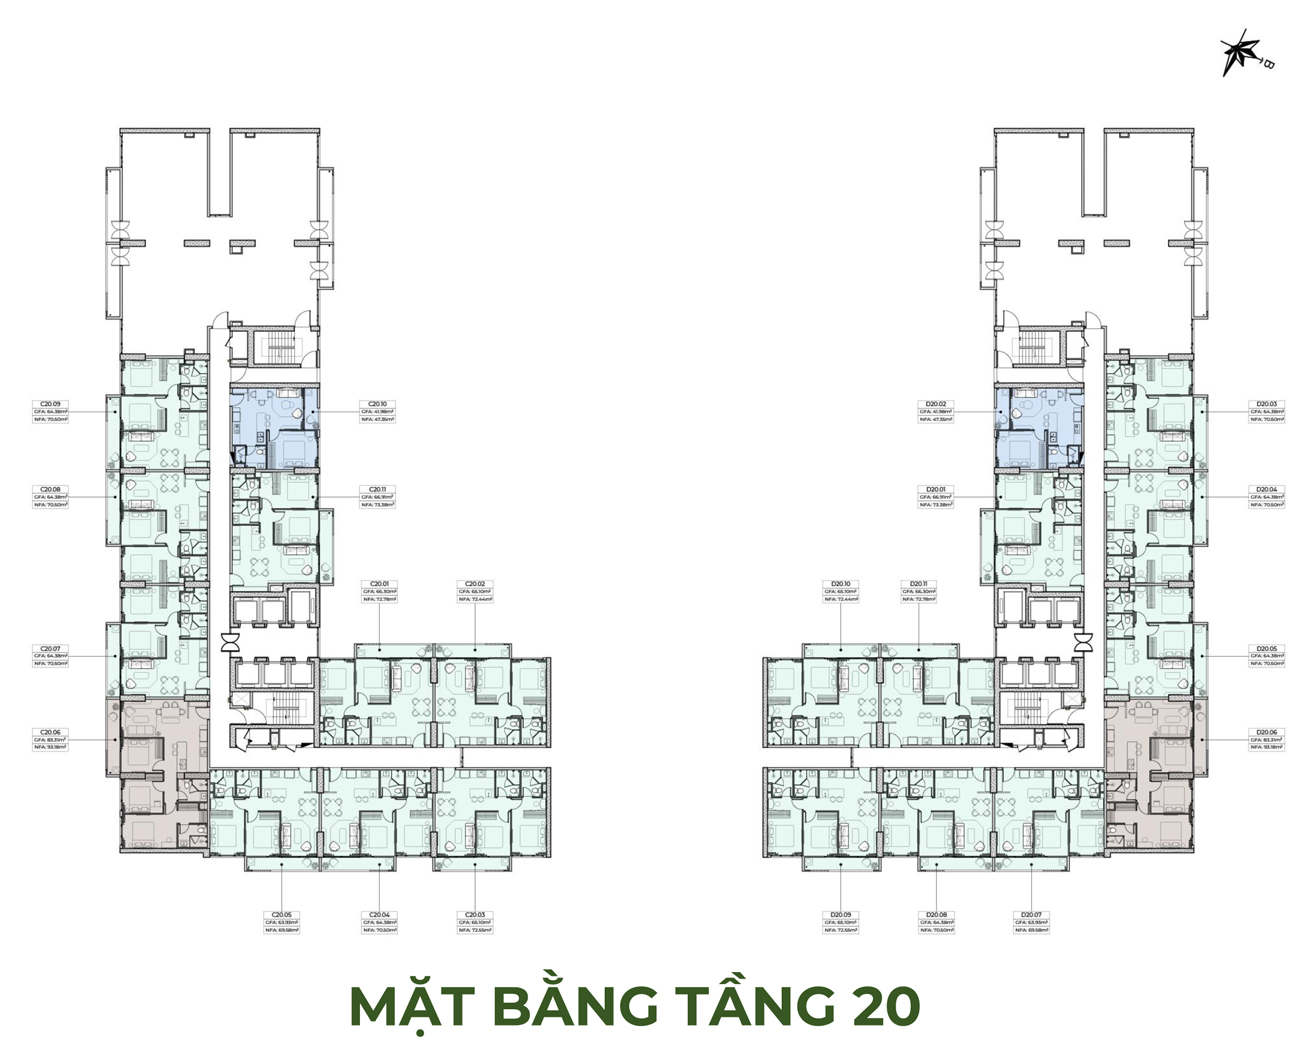 anderson-park-mat-bang-tang-20